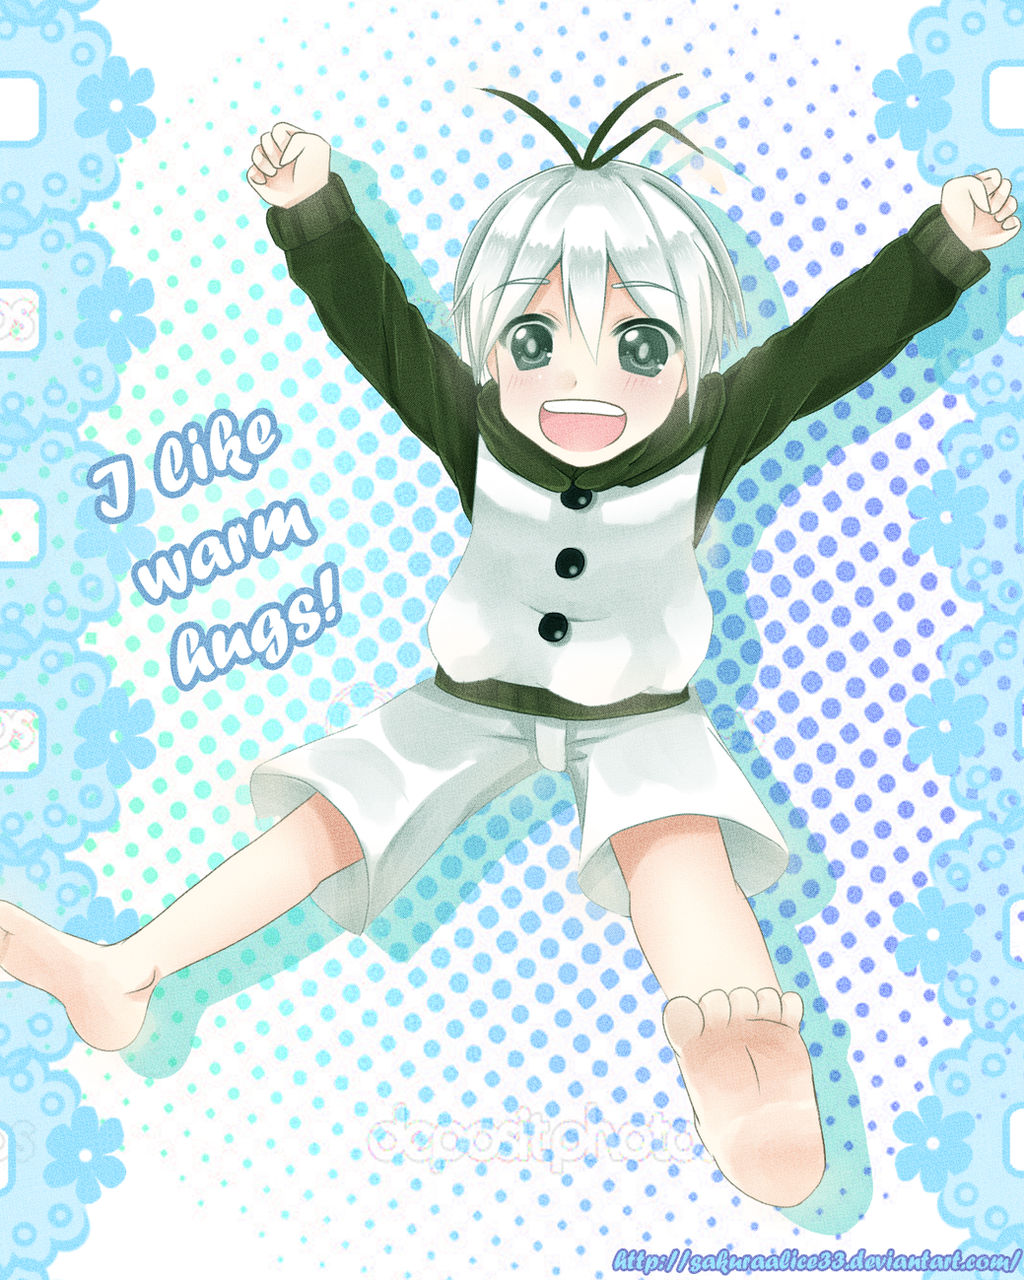 anime olaf (frozen) by SakuraAlice33 on DeviantArt